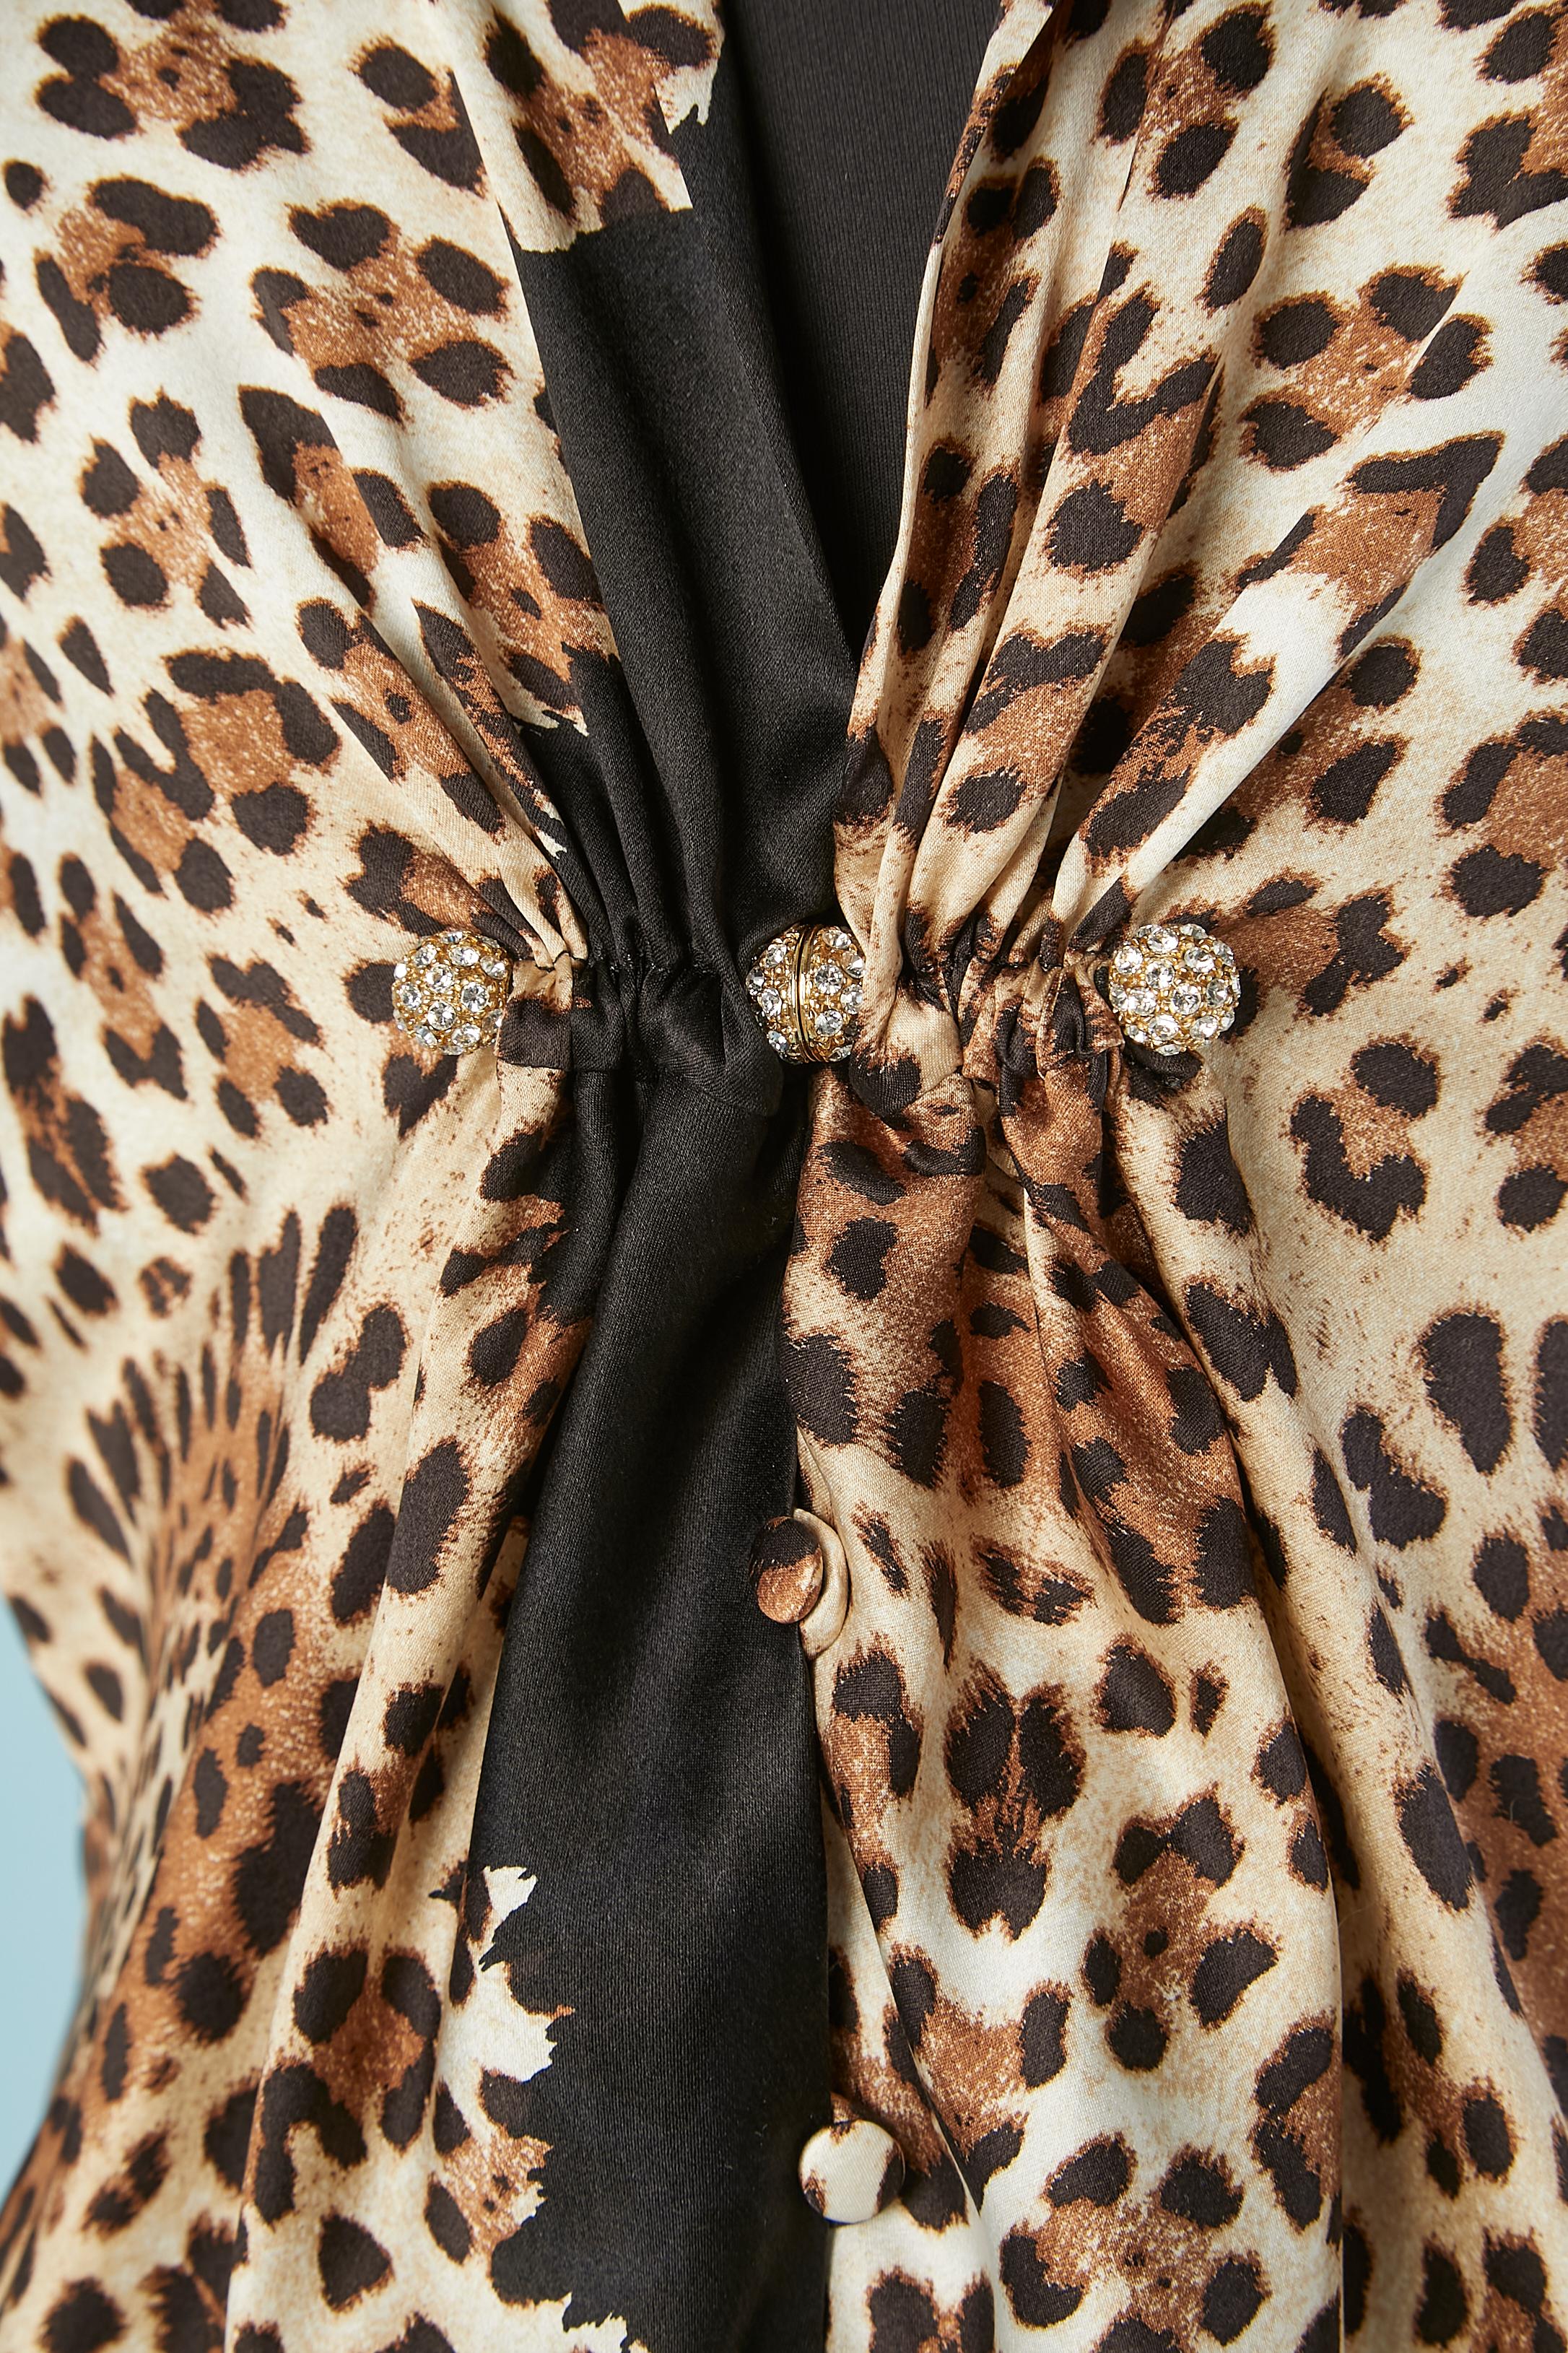 Leopardenhemd aus Seide mit Strassbrosche in der vorderen Mitte. Die Brosche kann zum Öffnen und Schließen des Hemdes auf- und abgeschraubt werden. Markenstoff . Echtheitshologramm.
GRÖSSE 44 (It) 40 (Fr) M/L 